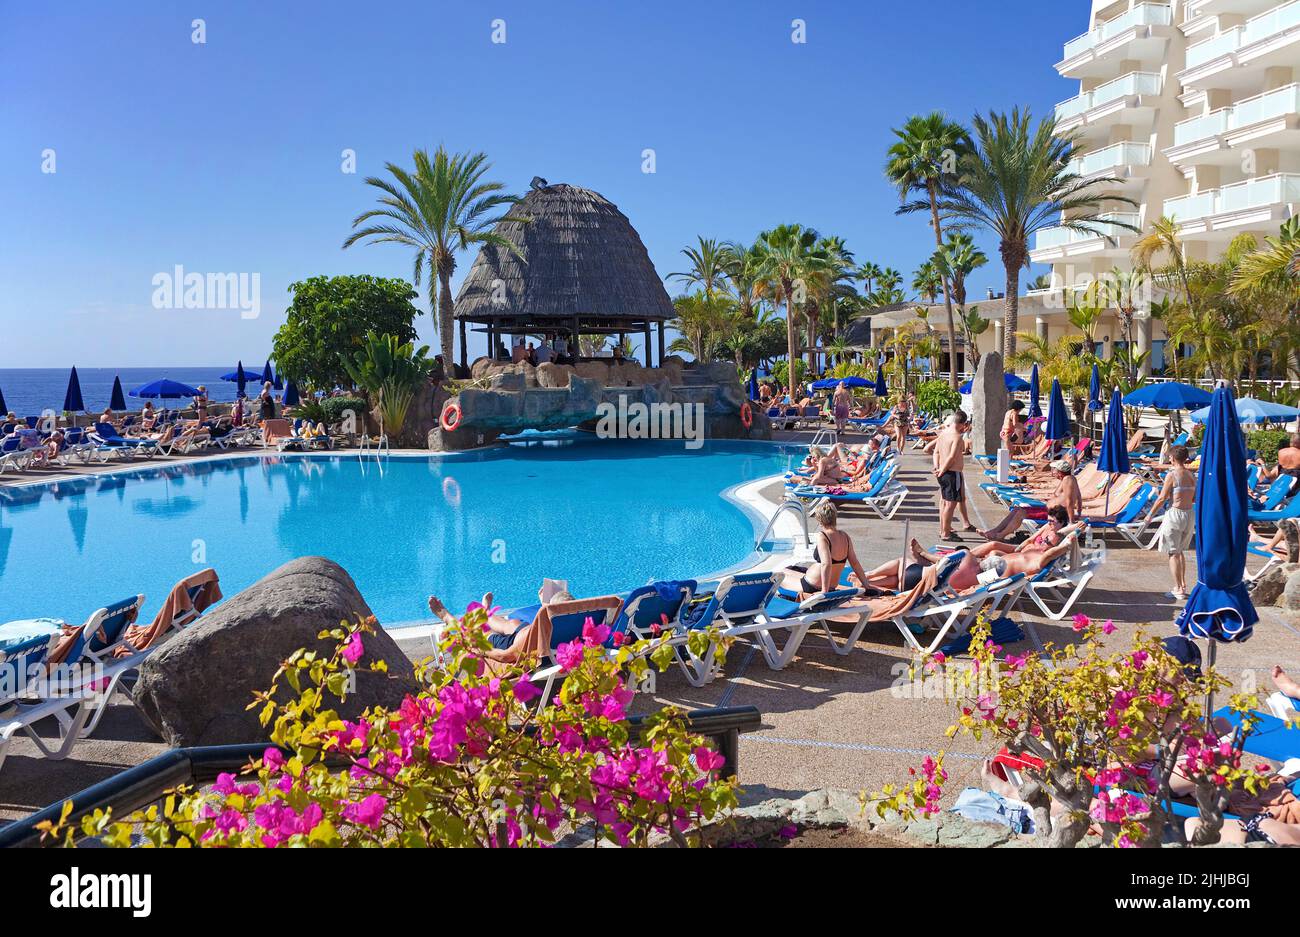 Villeggianti presso la piscina dell'hotel, Taurito, Grand Canary, Isole Canarie, Spagna, Europa Foto Stock